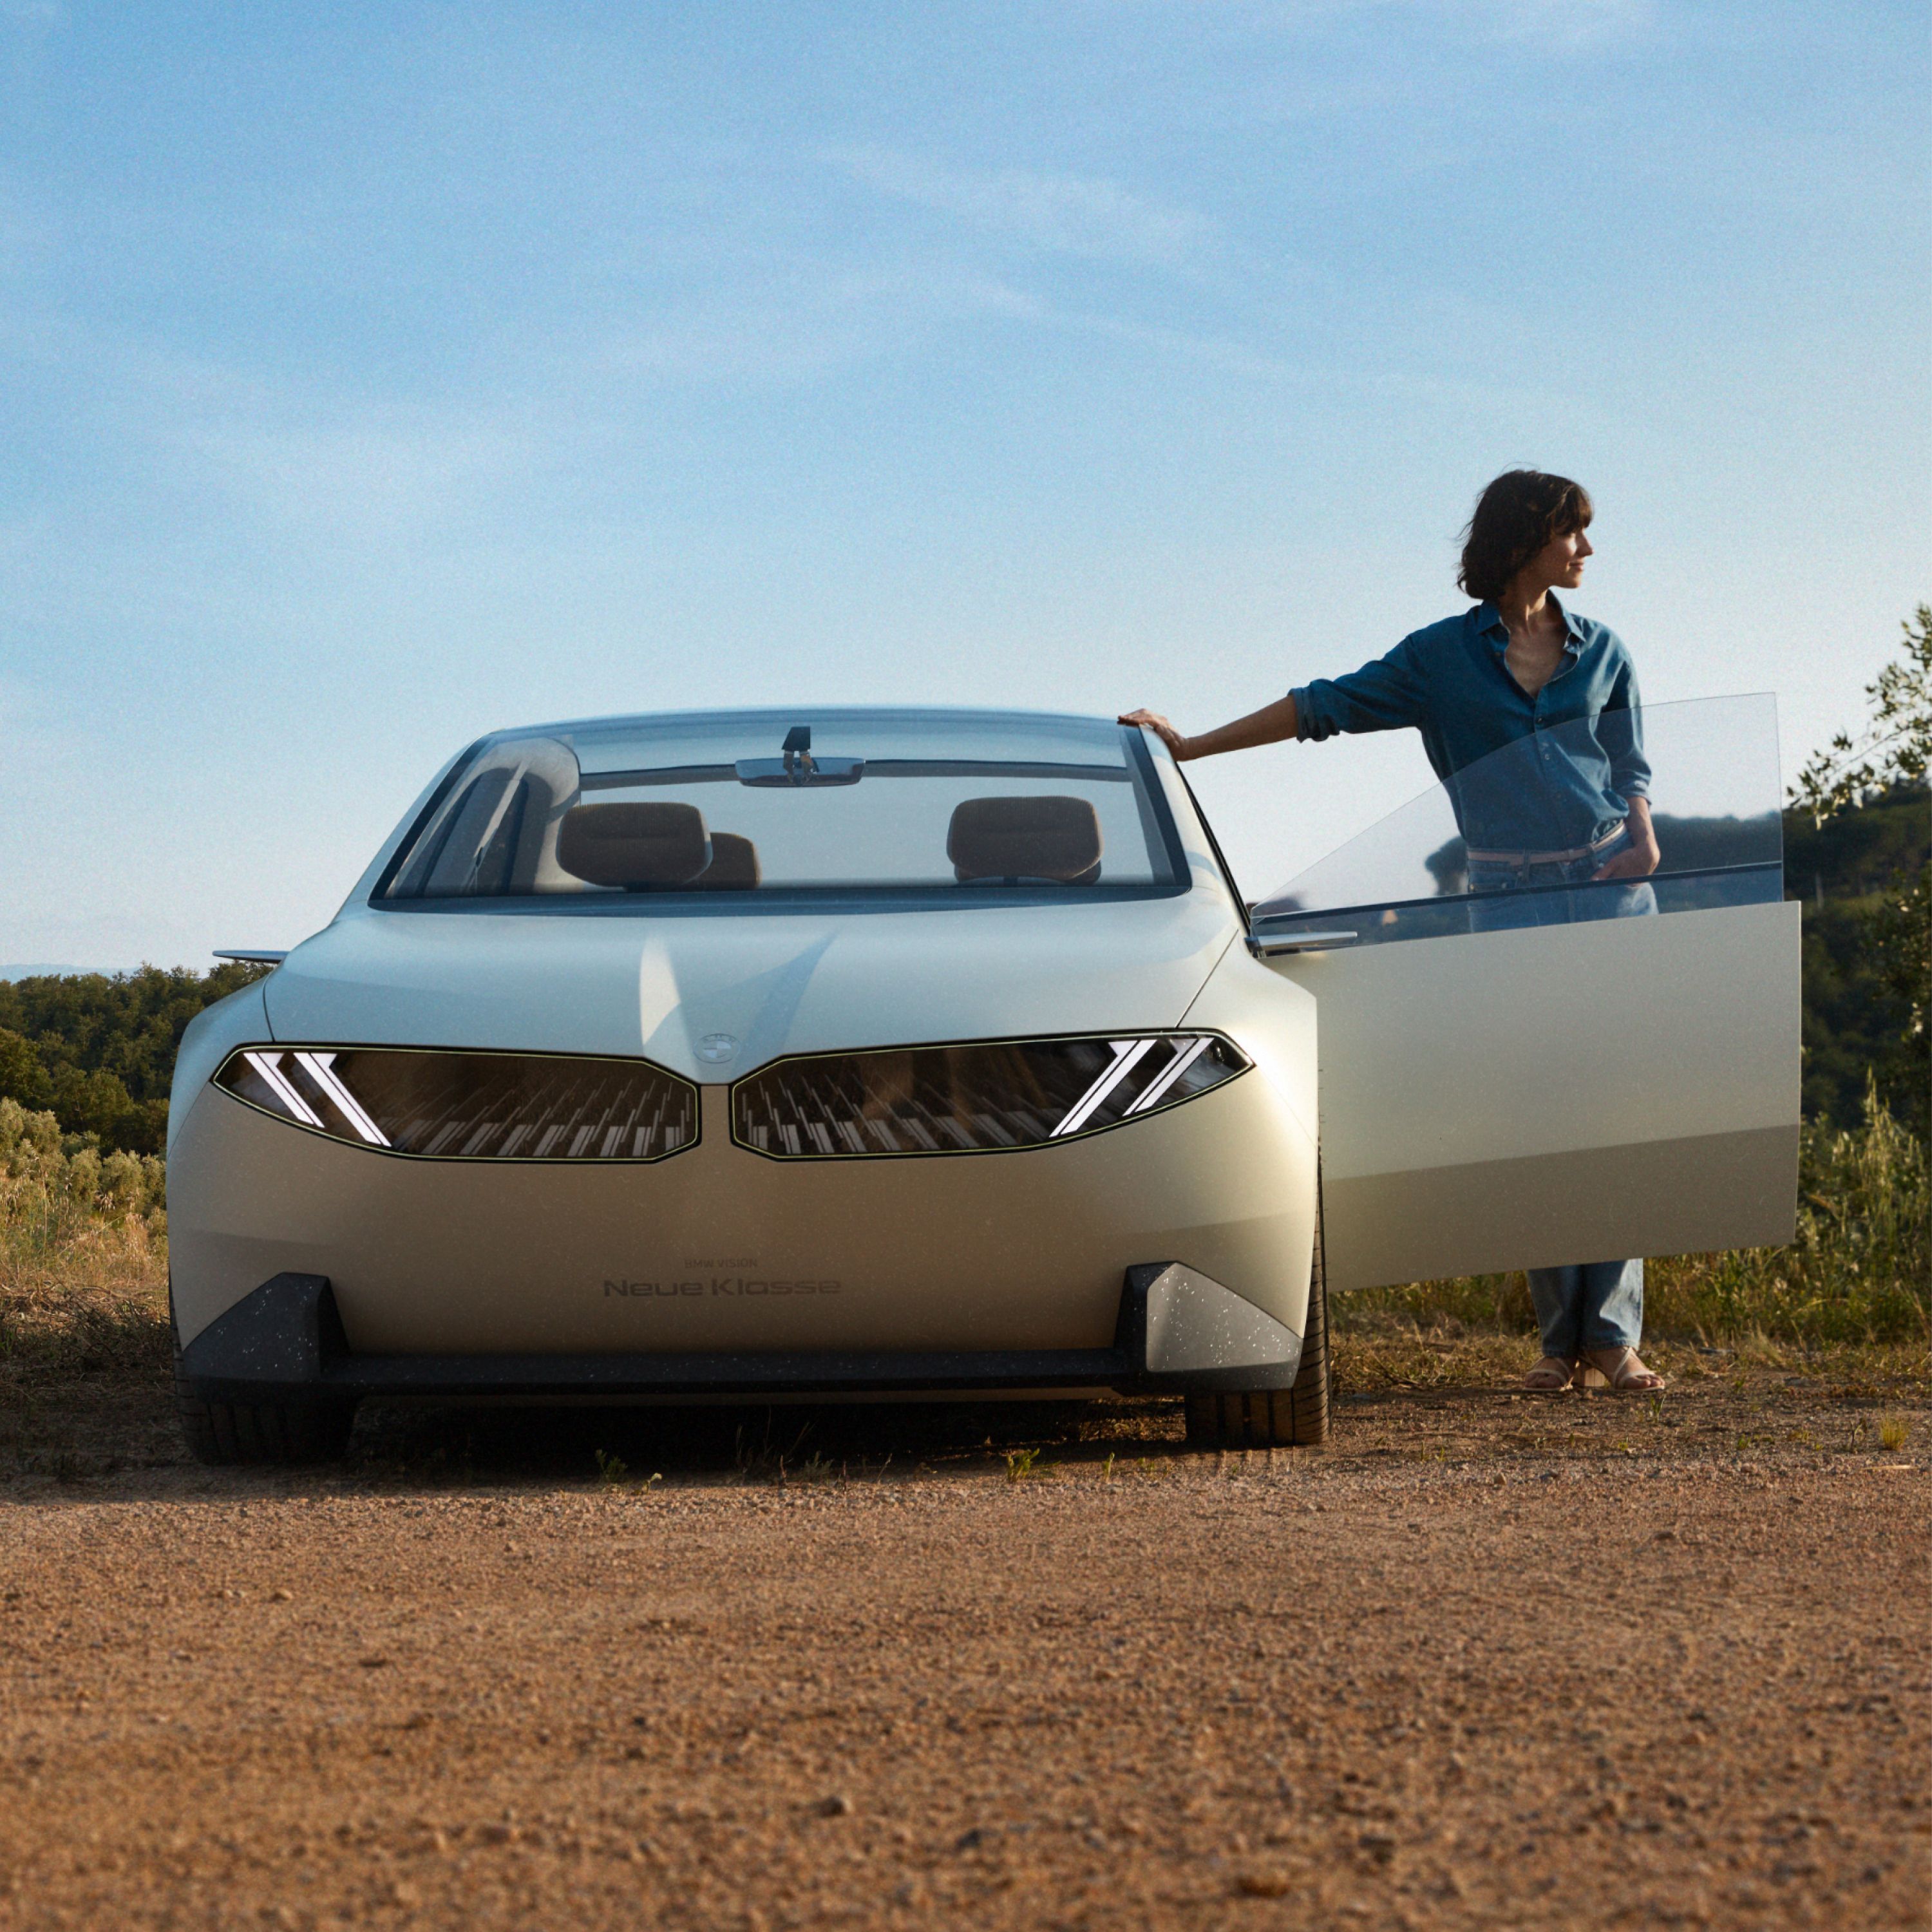 BMW Vision Neue Klasse Concept Car 2023, esterni, vista anteriore, parcheggiata nel deserto, portiera aperta, con una donna